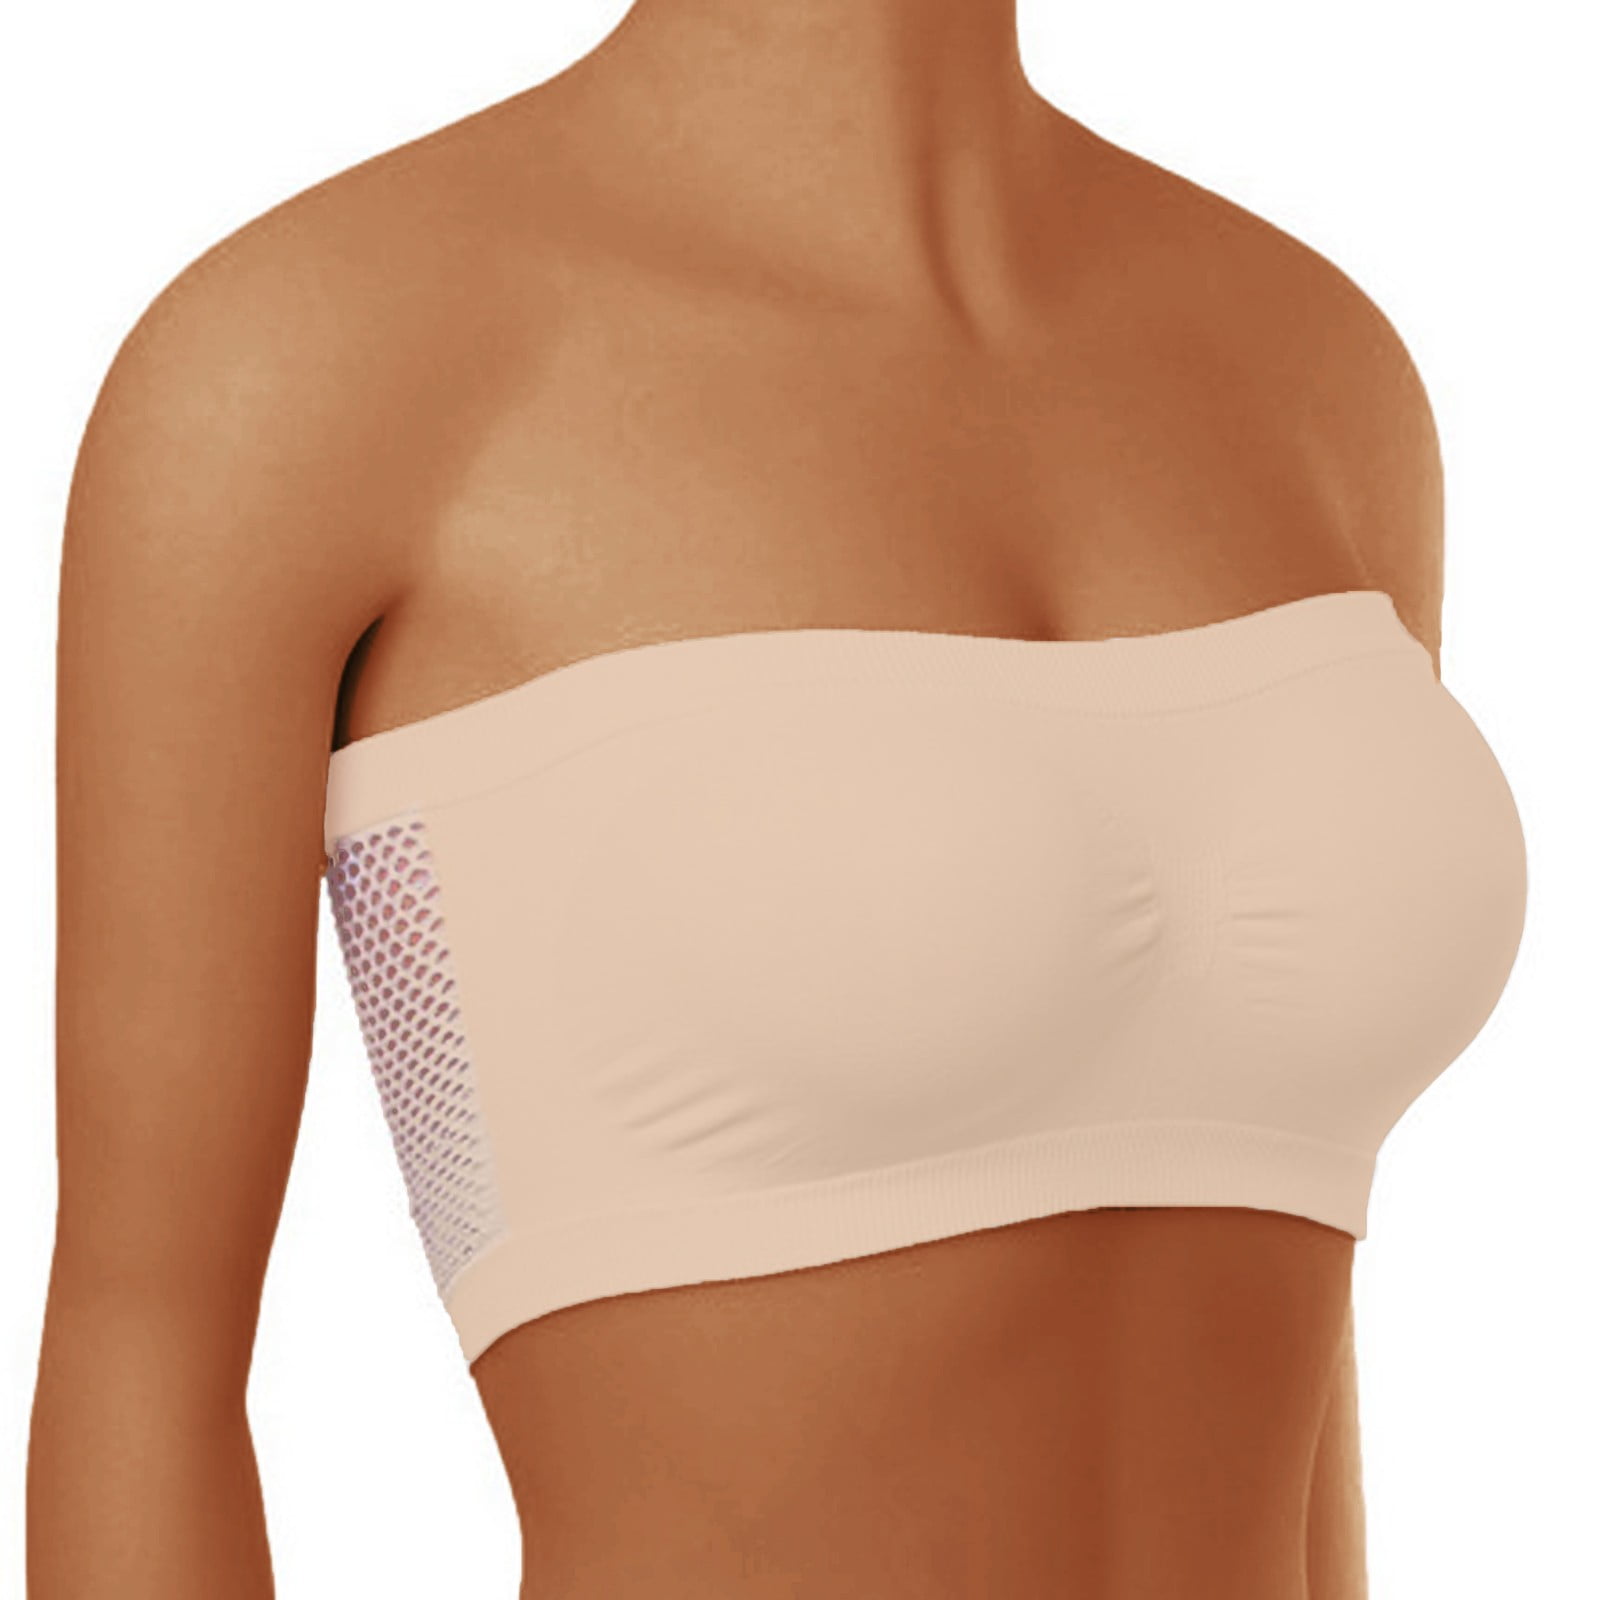 Cuoff Women's Underwear Stretch Strapless Bra Fashionable Summer Strapless  Bra Suitable For One-Shoulder Tops Beige S